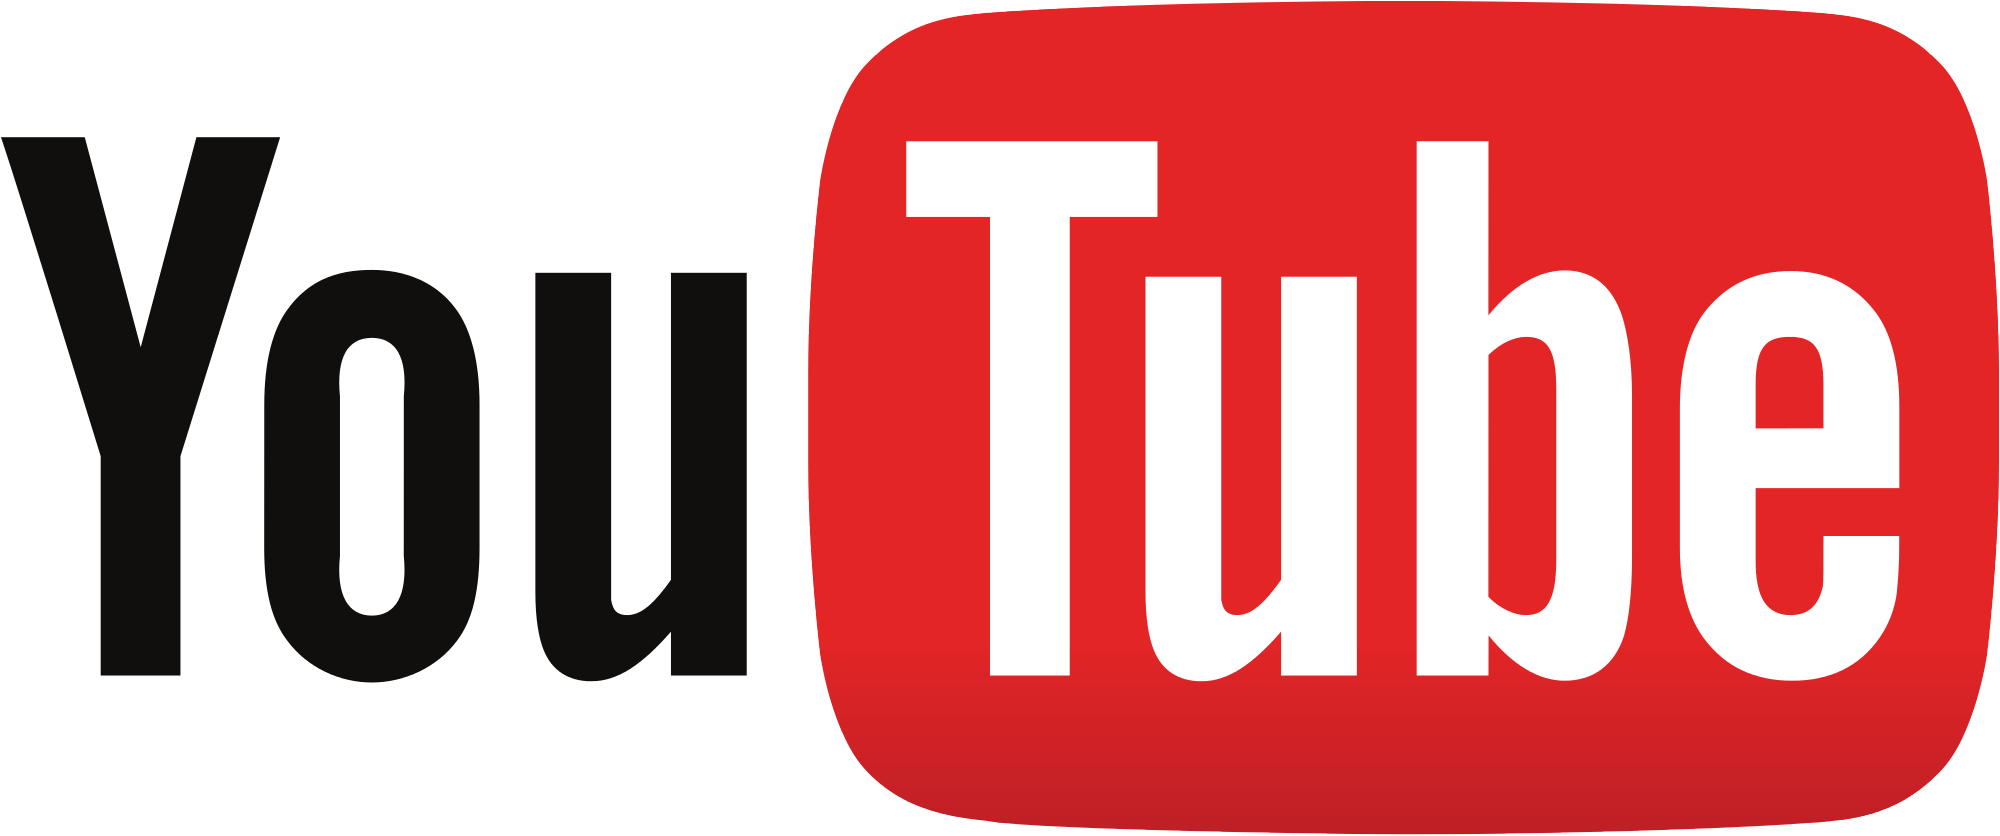 YouTube logo 2013.svg Cómo subir un vídeo a Youtube paso a paso